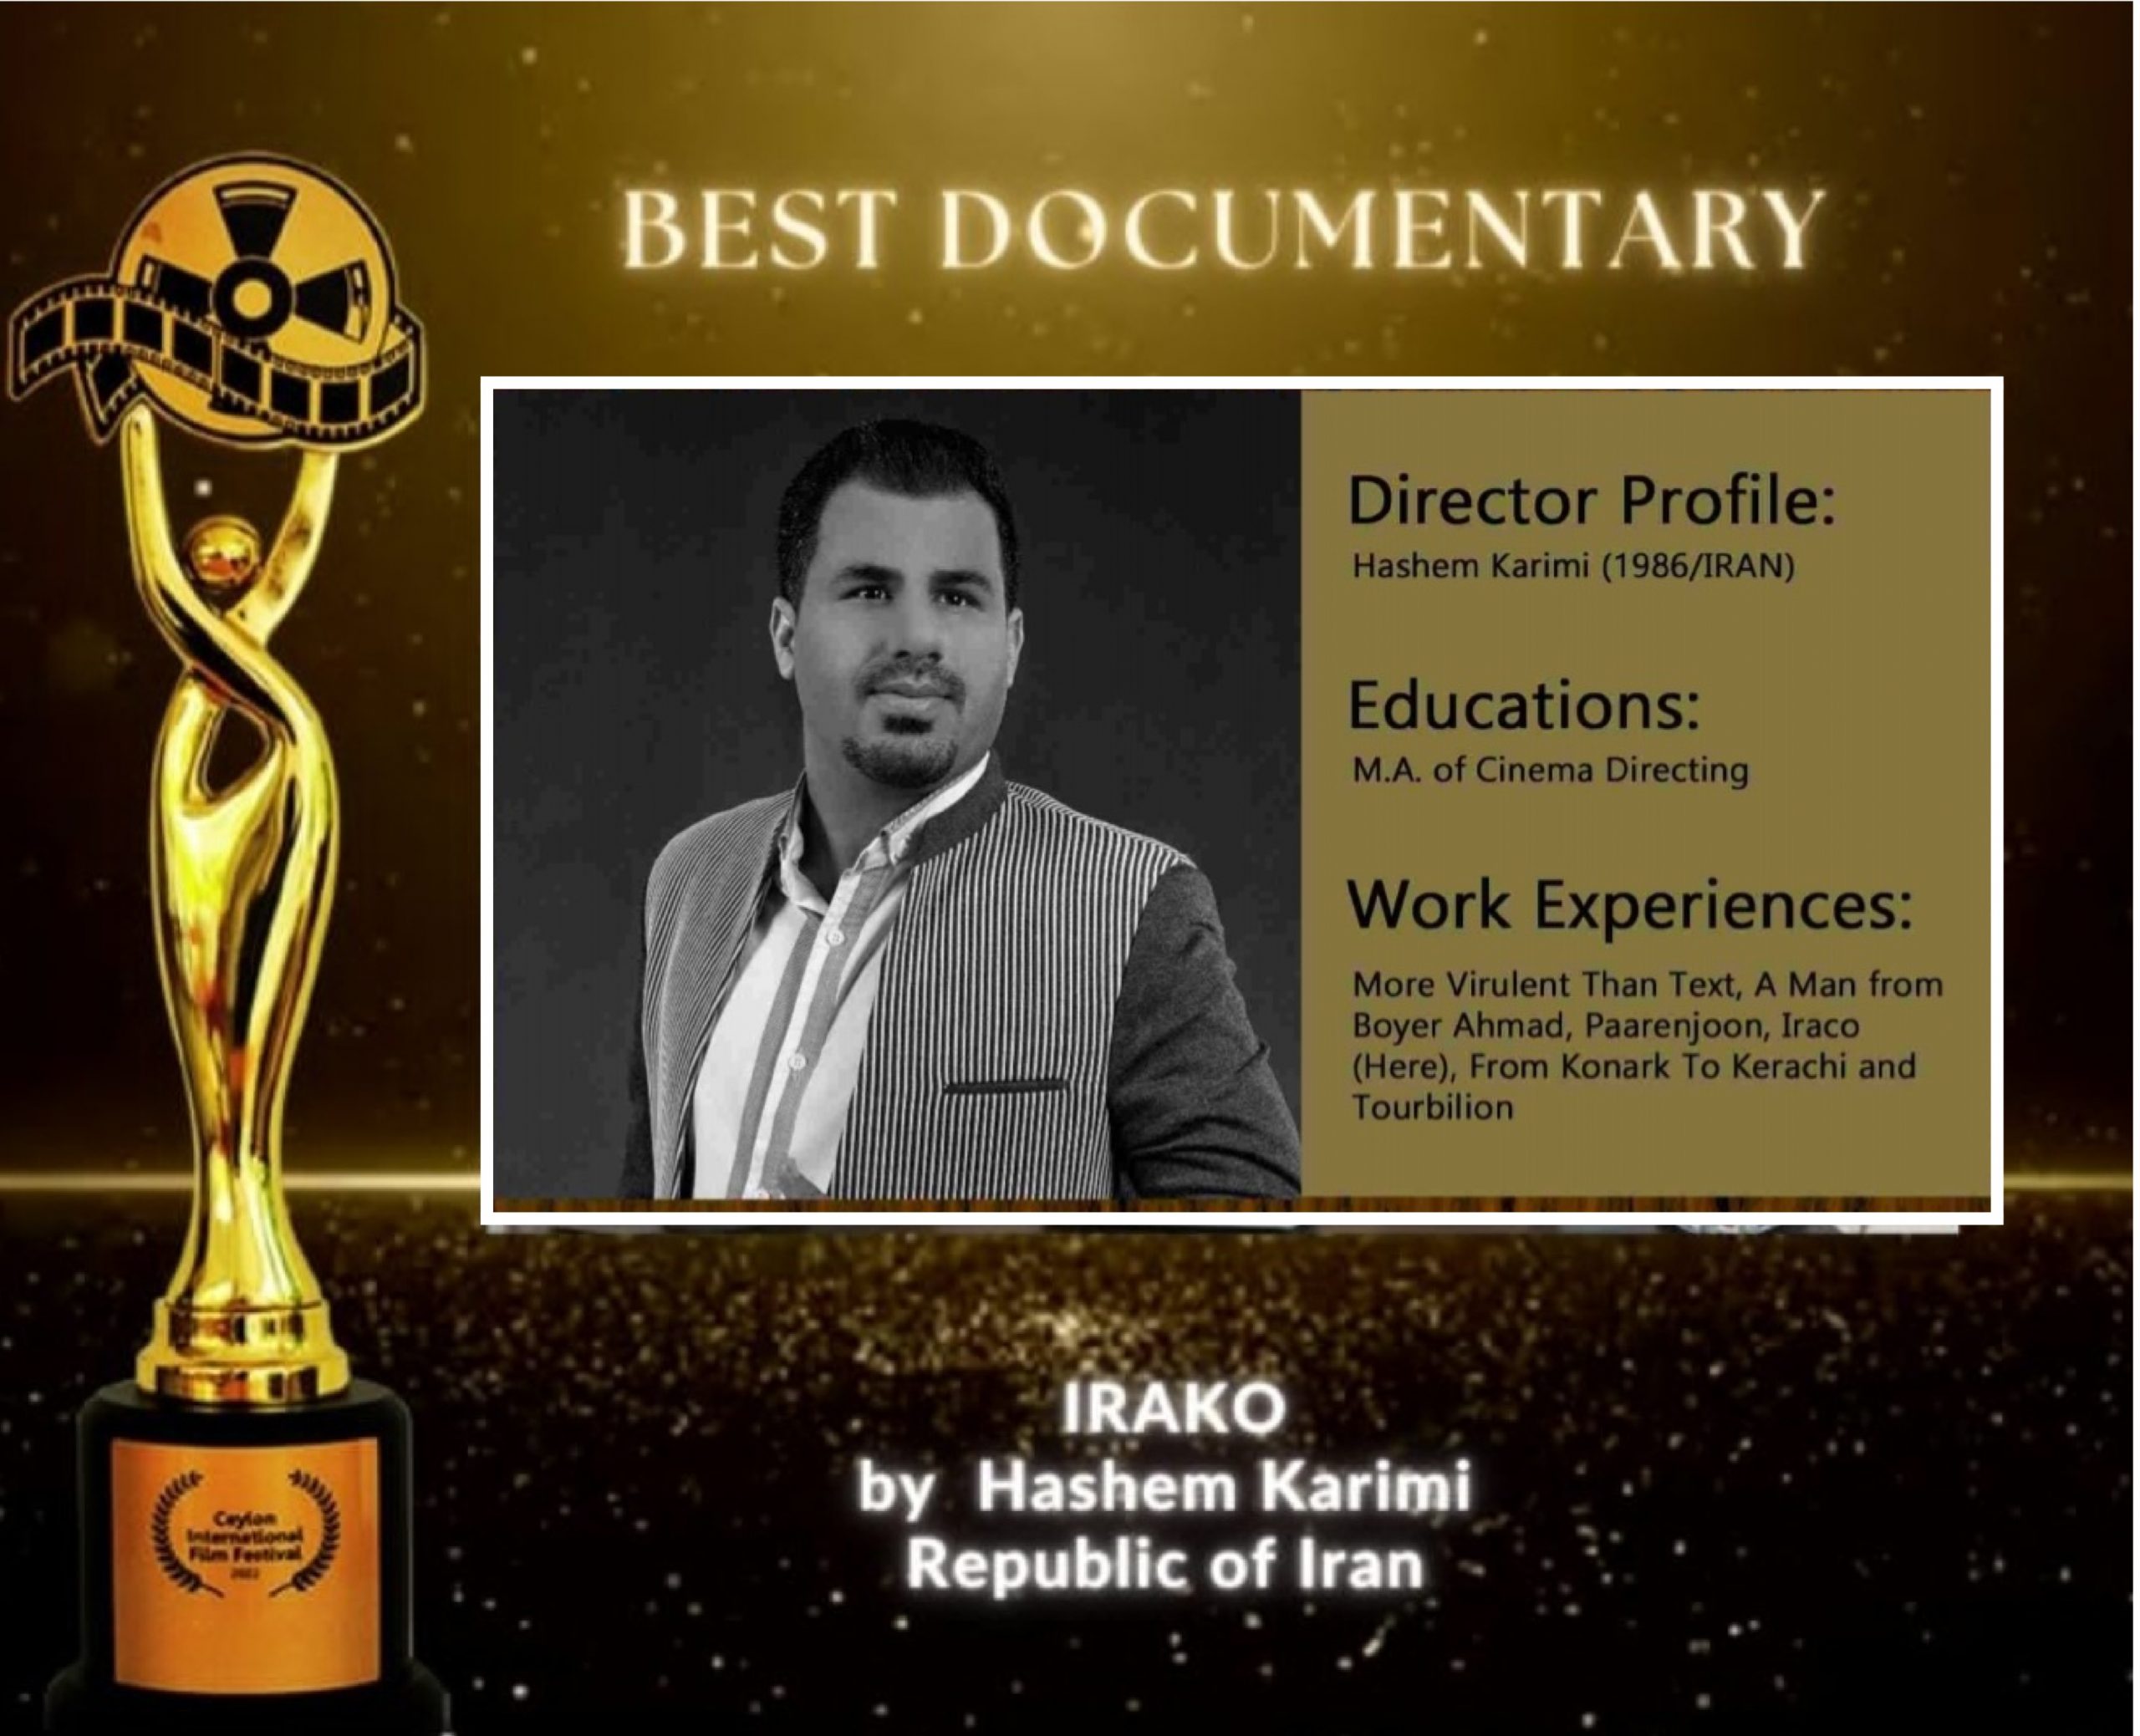 ایراکو ” تندیس طلای بهترین فیلم، جشنواره جهانی فیلم کالیفرنیا را کسب کرد